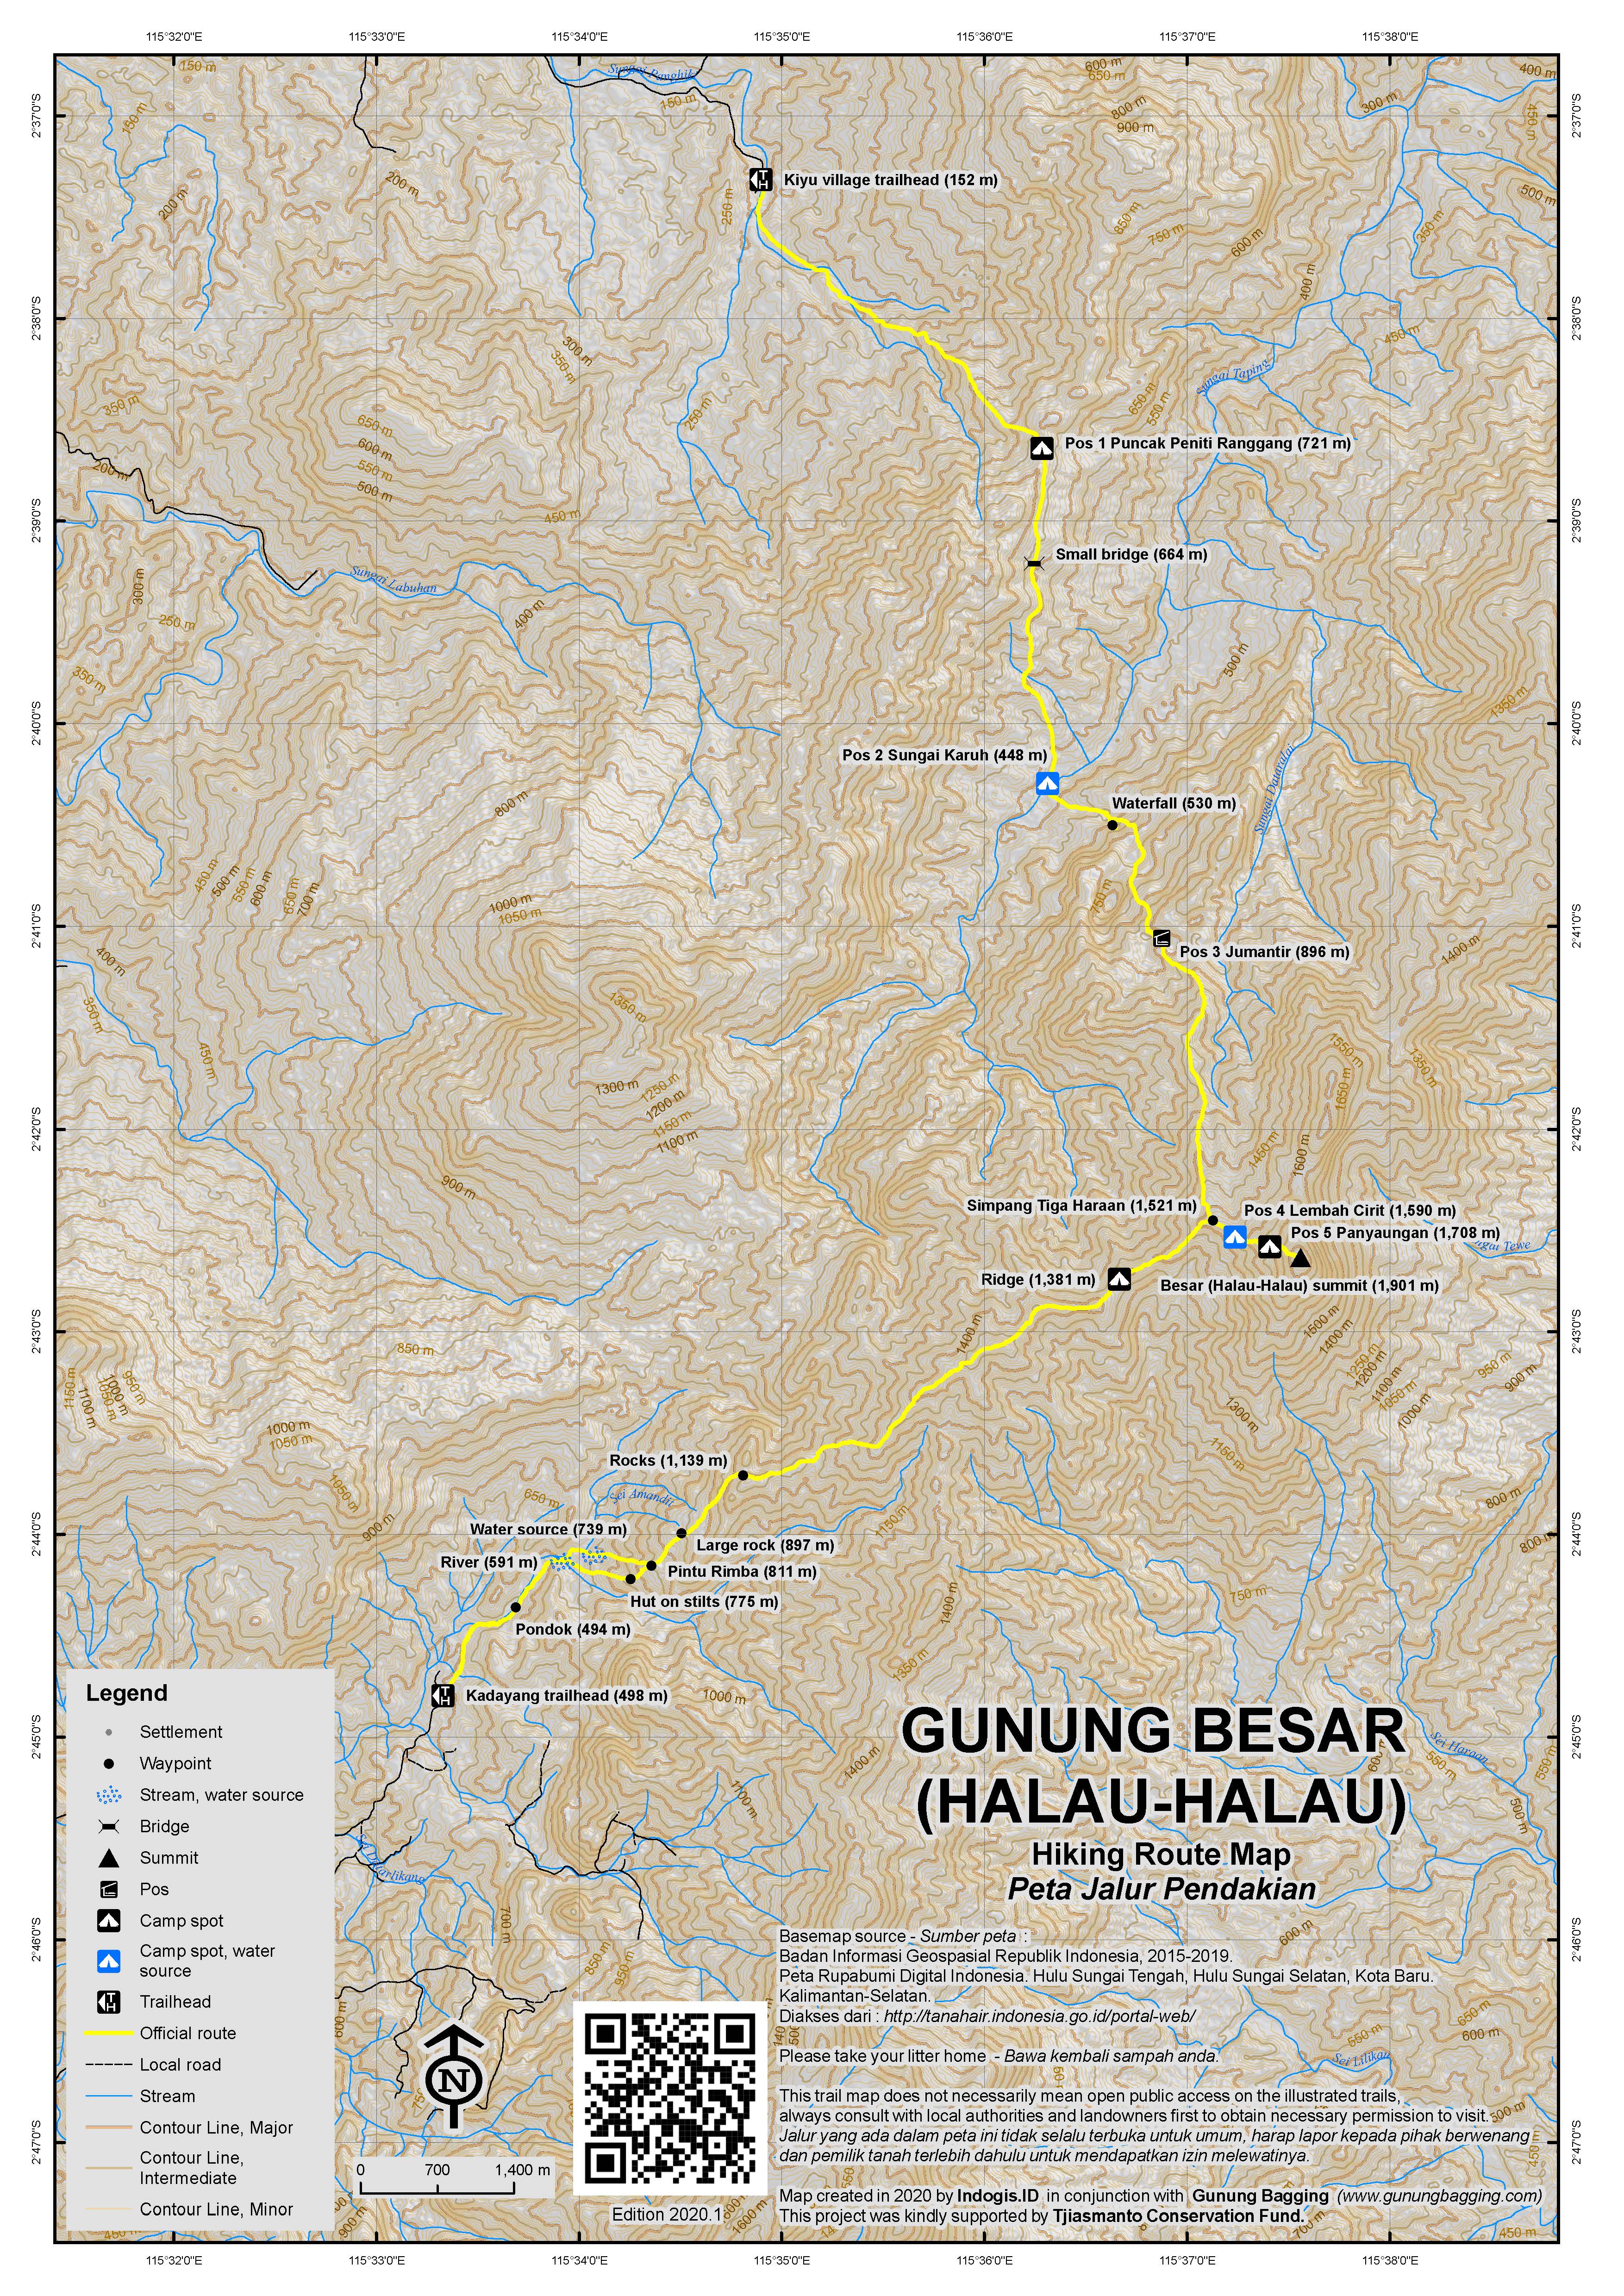 Peta Jalur Pendakian Gunung Besar